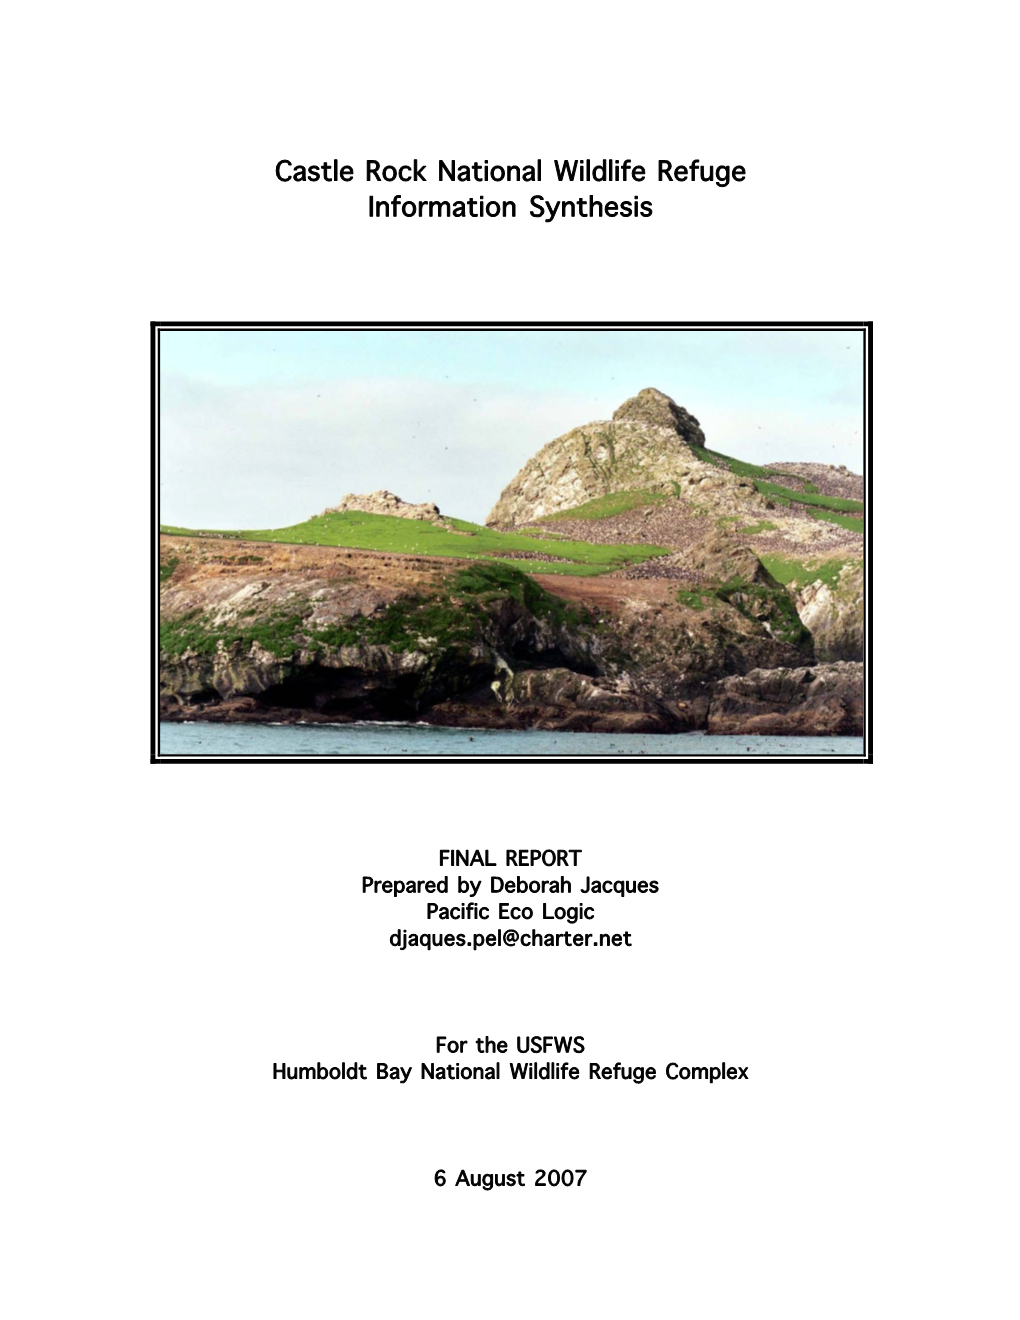 Castle Rock National Wildlife Refuge Information Synthesis